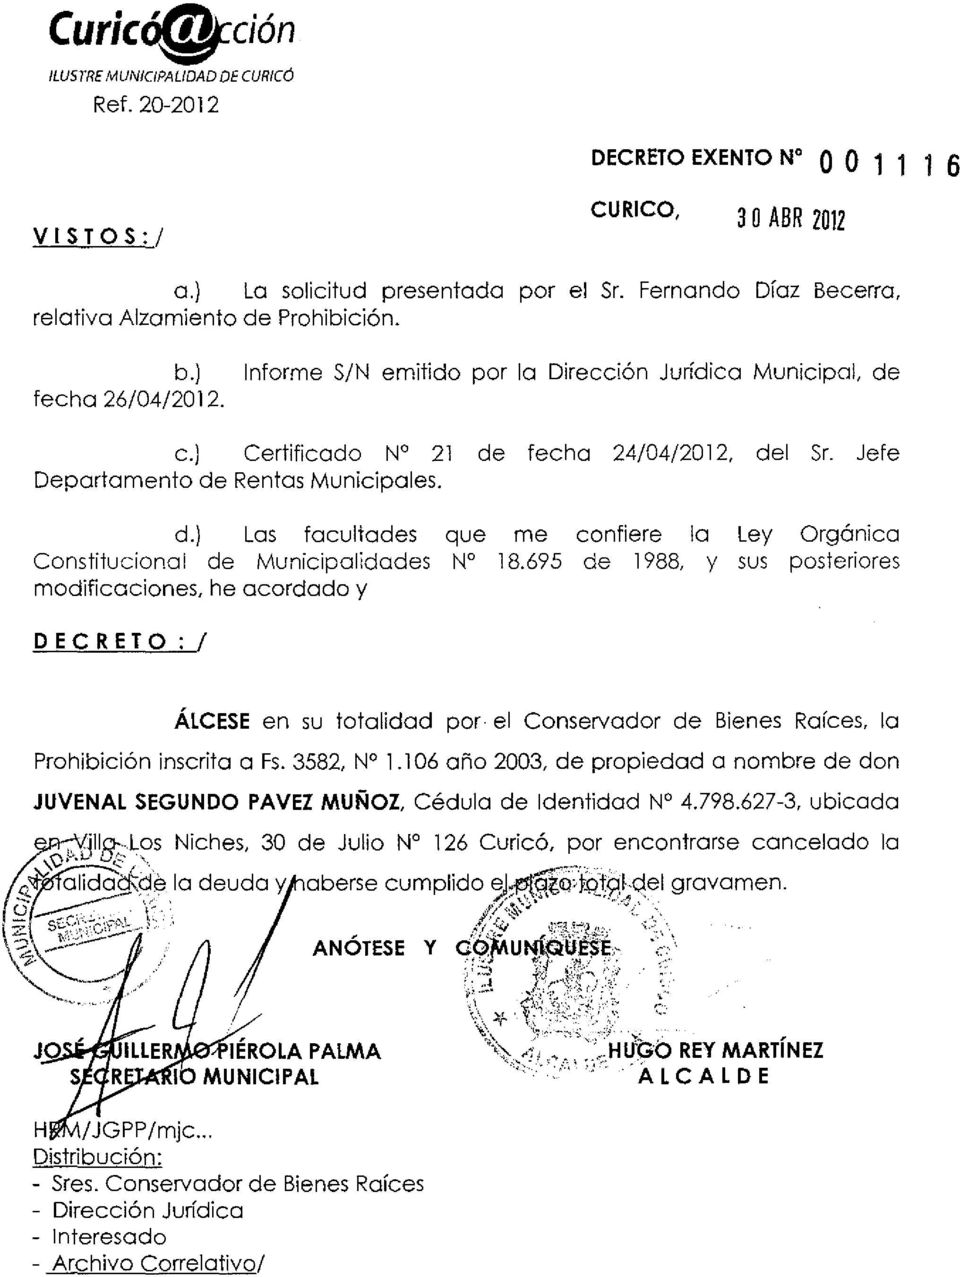 Jefe Departamento de Rentas Municipales. DECRETO:! la Prohibición inscrita a Fs. 3582, N 1.106 año 2003, de propiedad a nombre de don JUVENAL SEGUNDO PAVEZ MUÑOZ, Cédula de Identidad N 4.798.